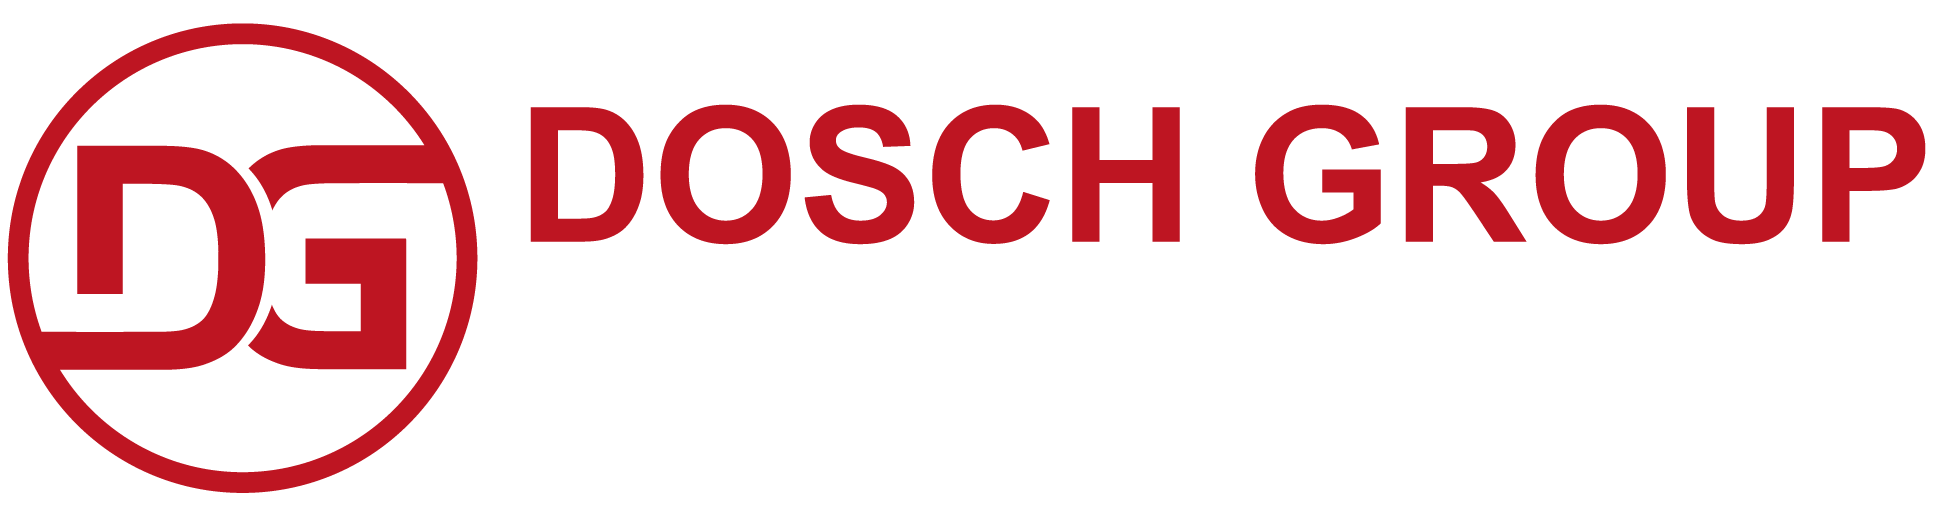 Dosch Group